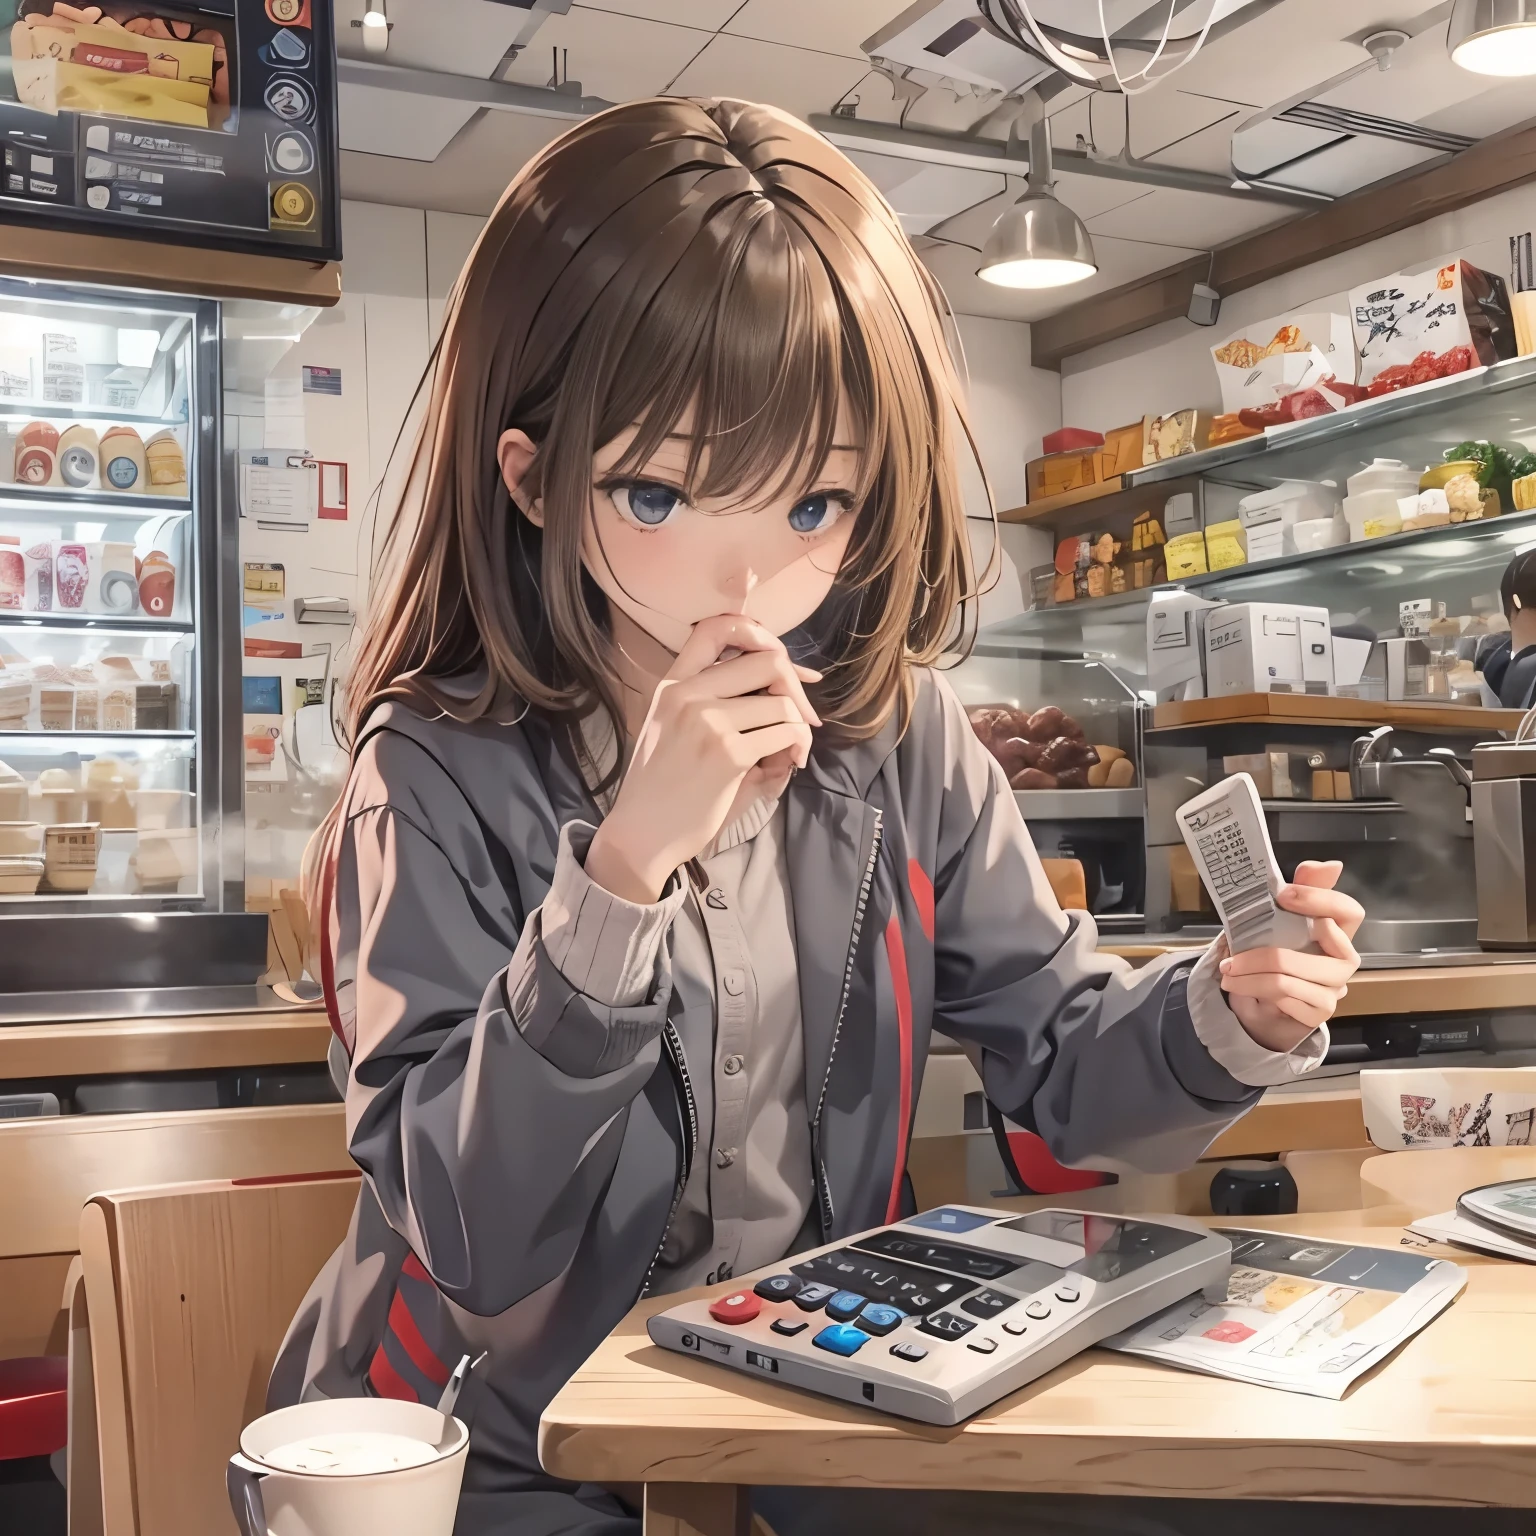 imagem de anime realista、fundo simples、1 garota、nervoso、tenha uma calculadora、Assentos de café